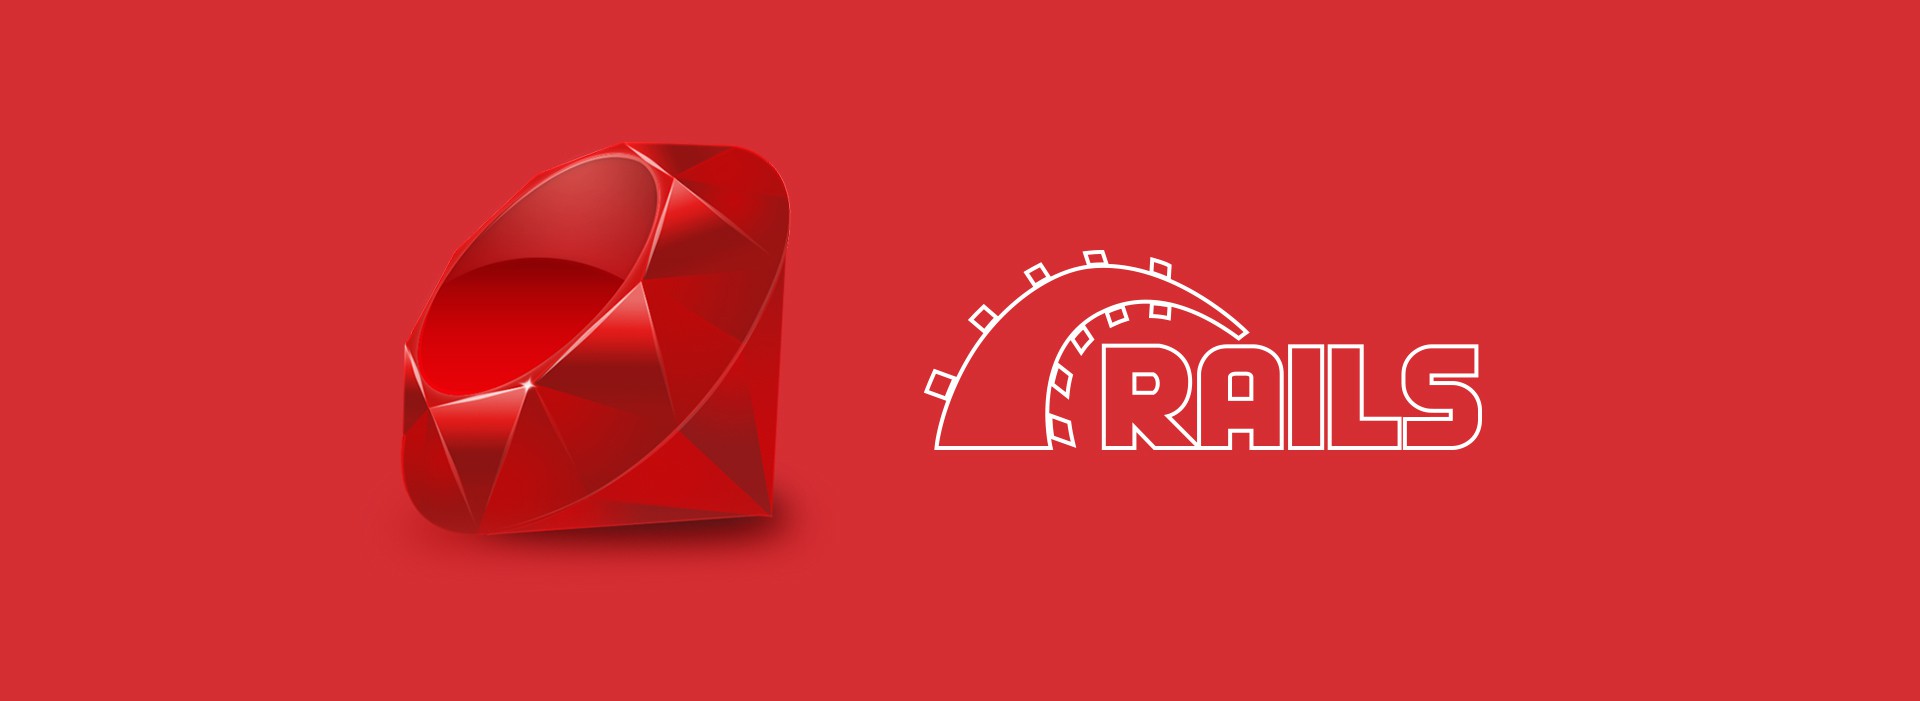 Ruby o rails framework web development